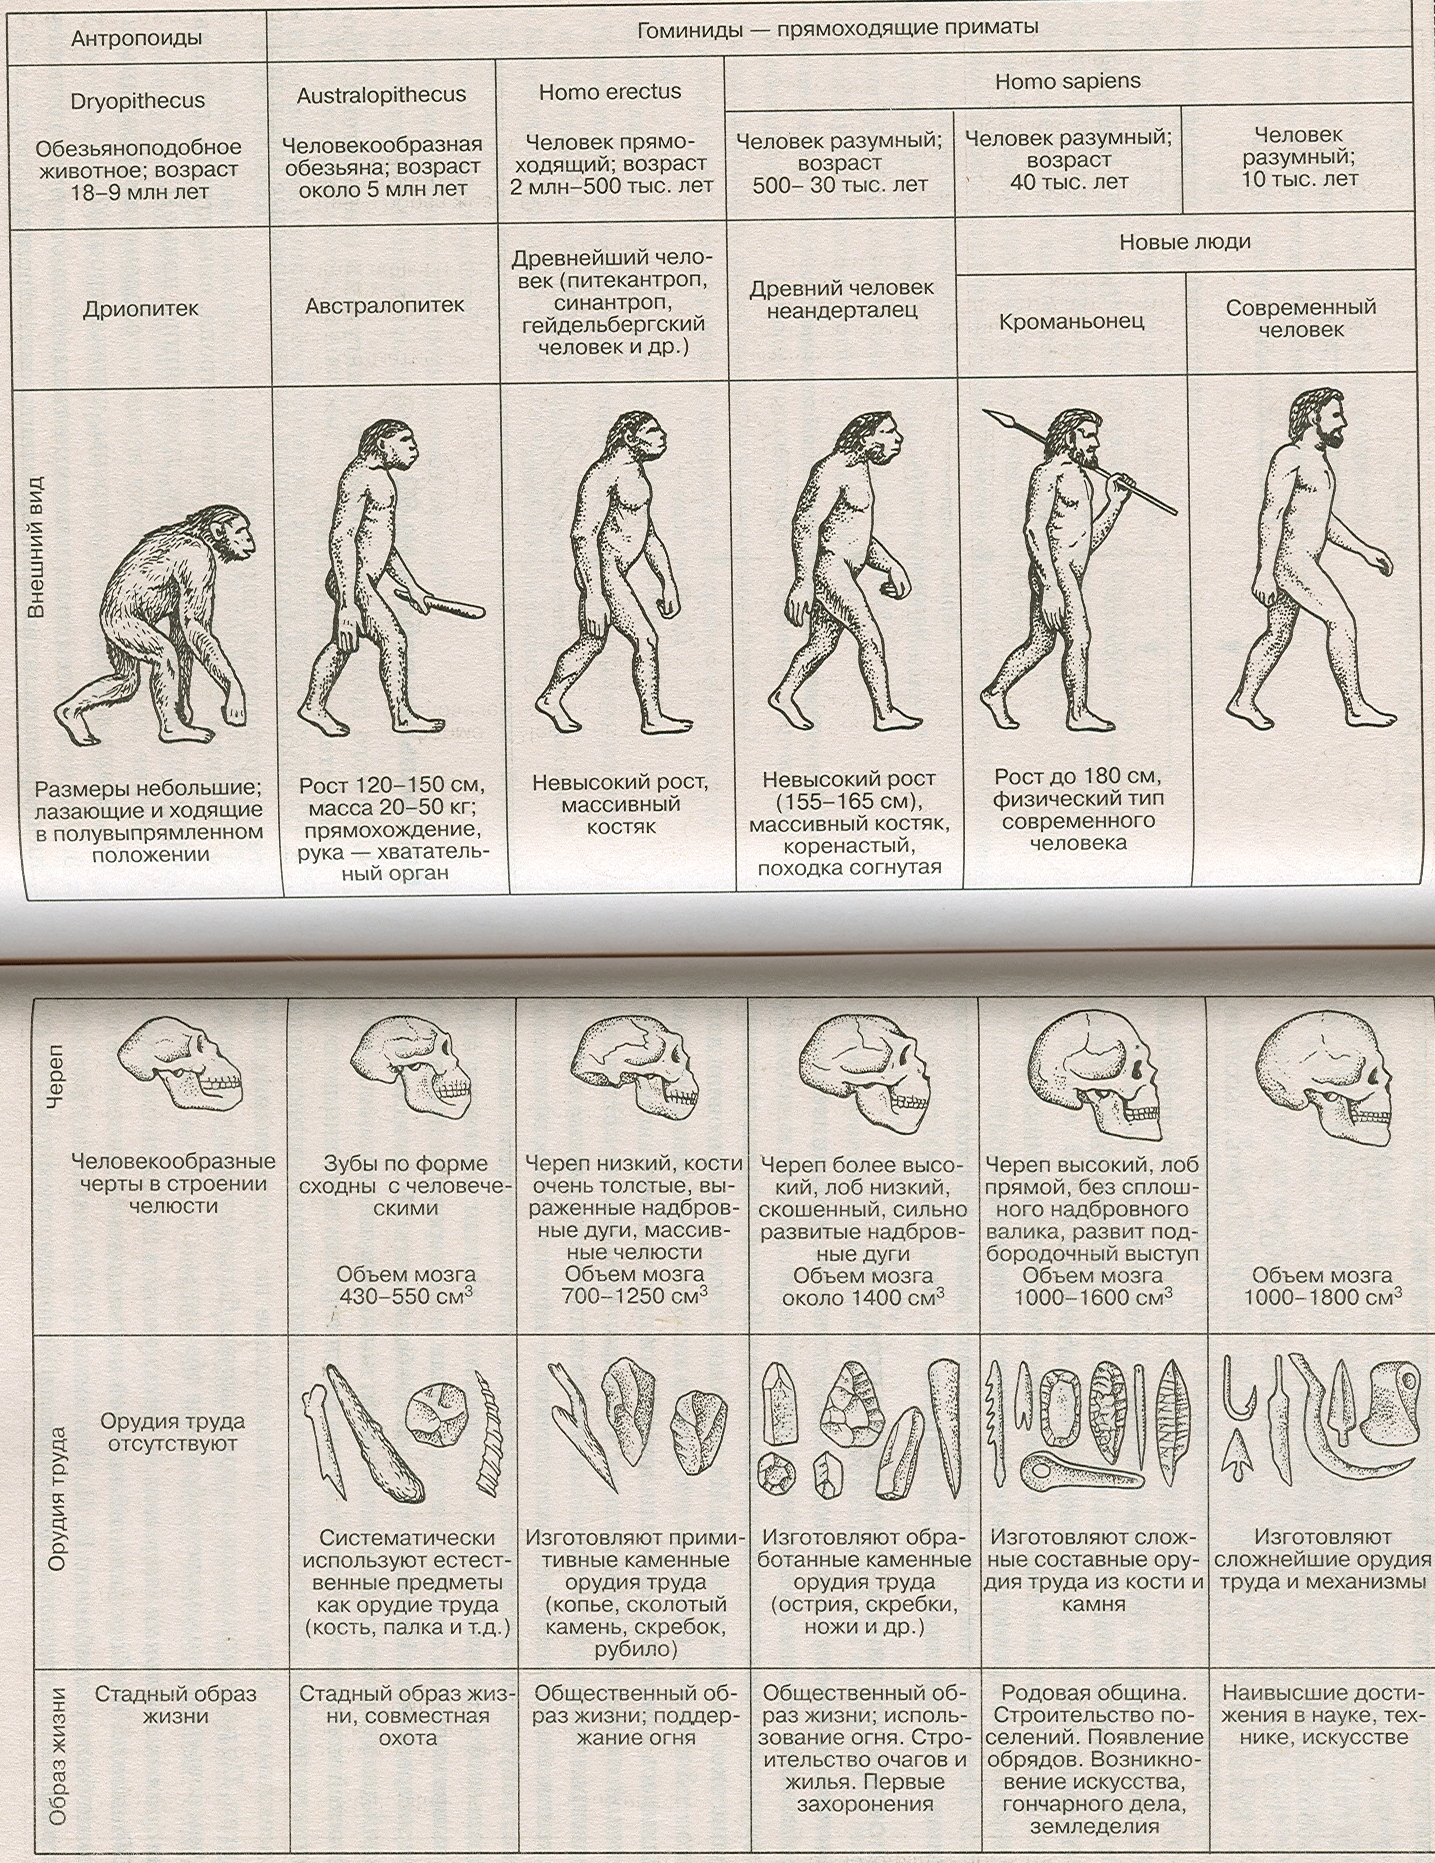 Последовательность использования предками человека орудий. Этапы развития человека таблица этапы антропогенеза. Этапы эволюции человека таблица дриопитек. Основные стадии развития человека таблица. Стадия развития человека таблица по биологии.